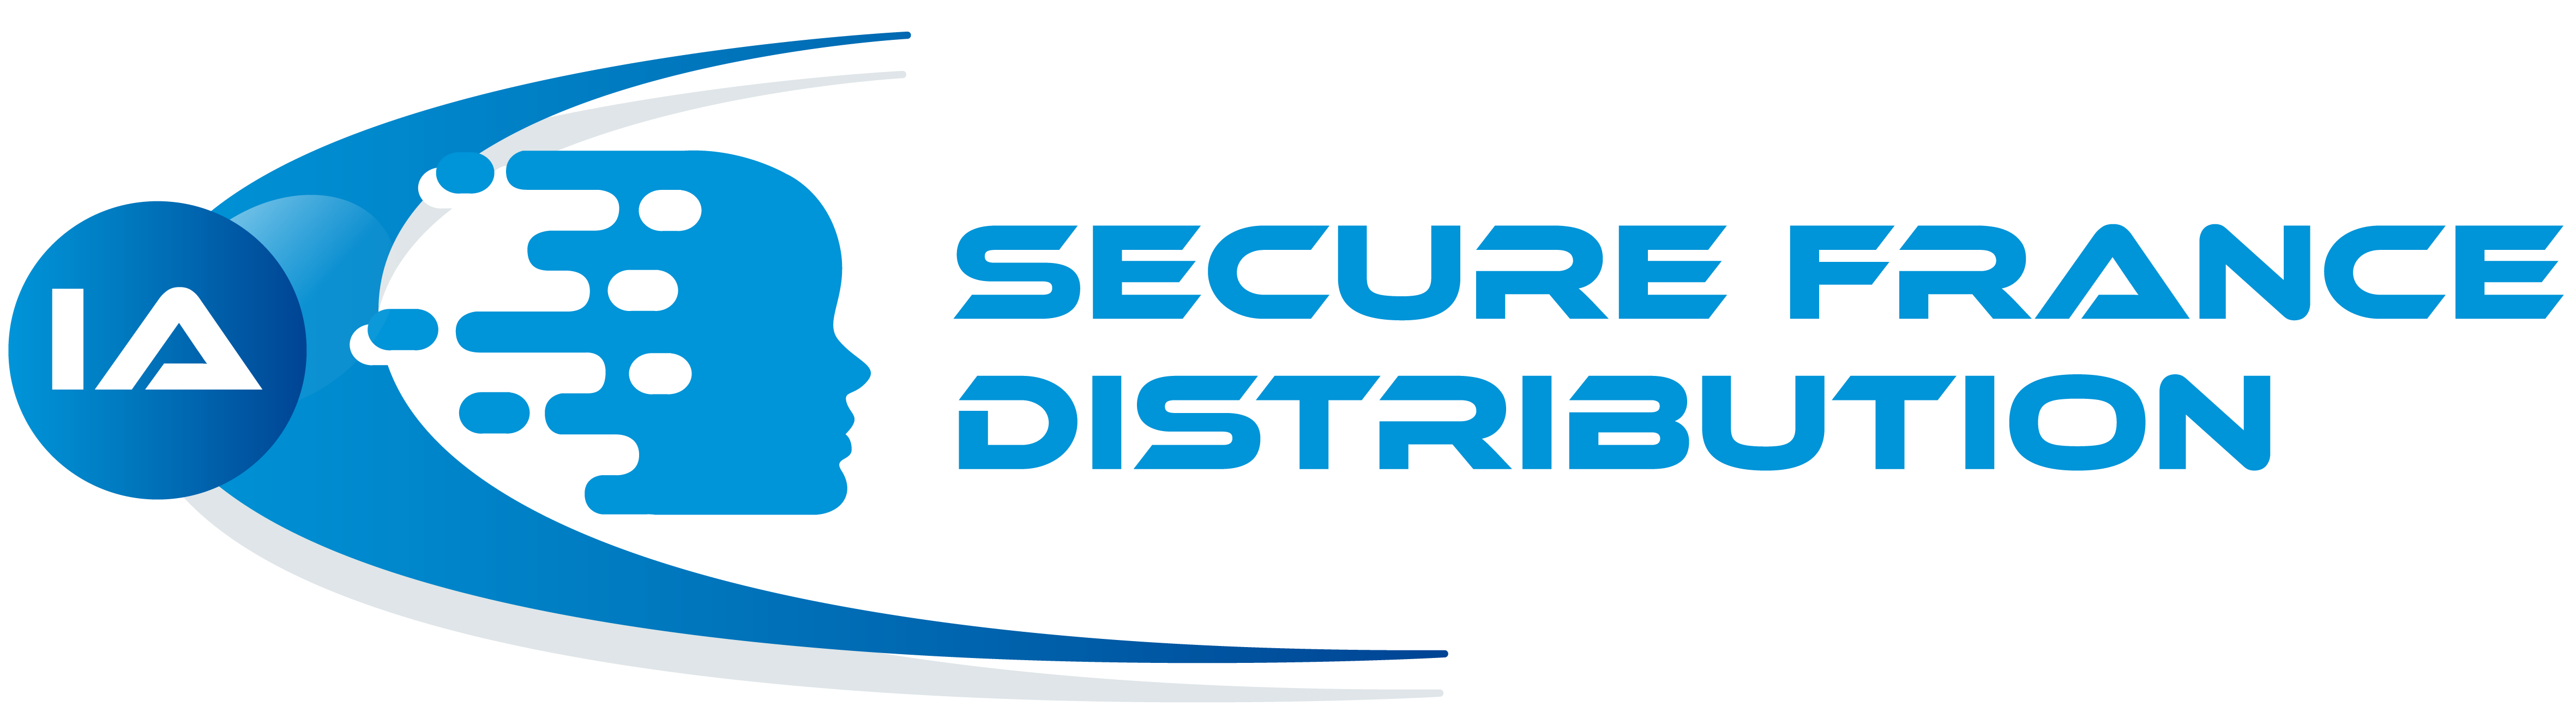 Secure France Distribution